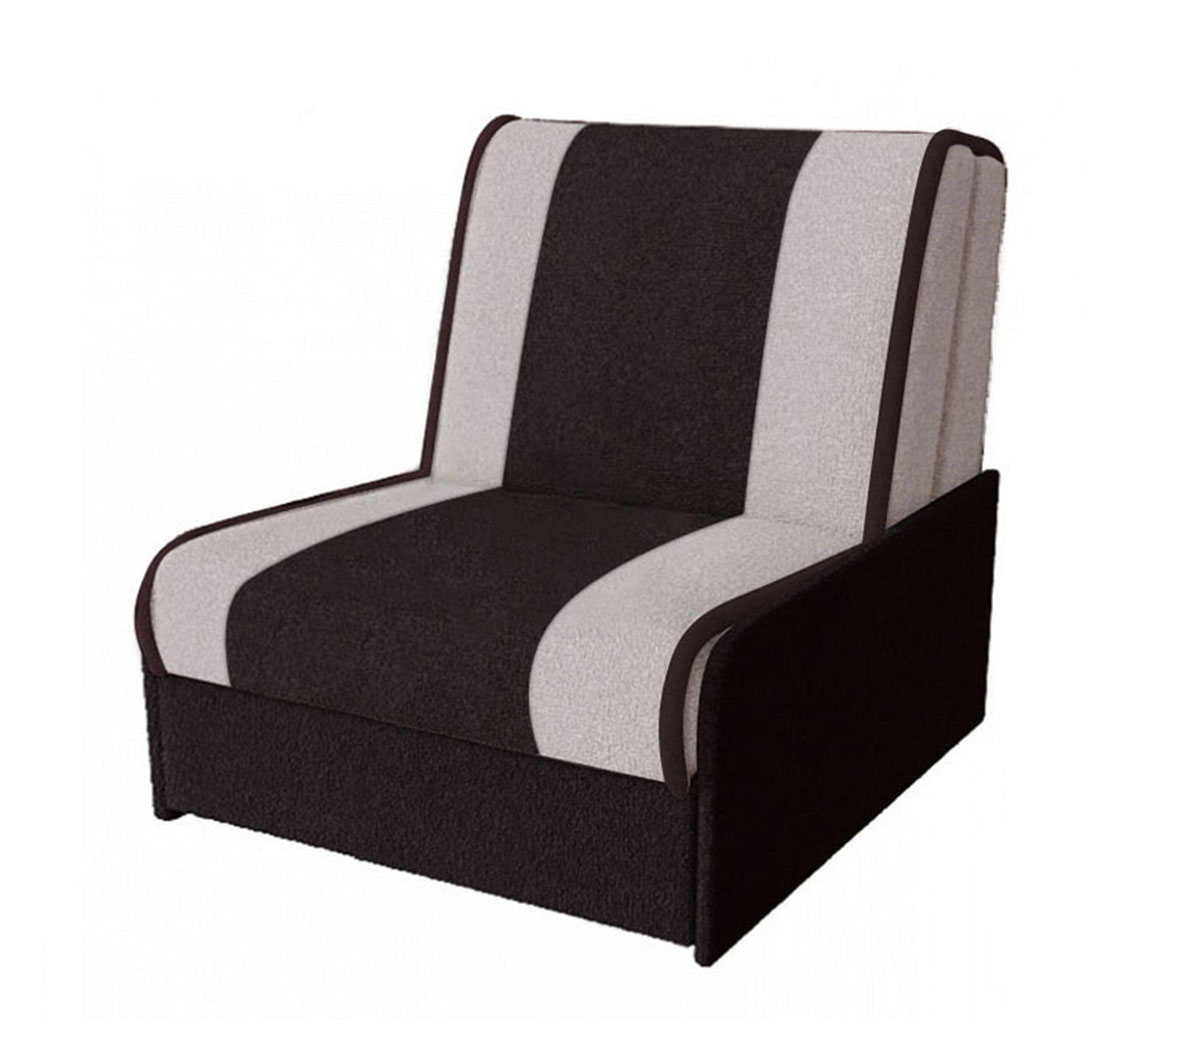 Кресло-кровать Глобус Комби